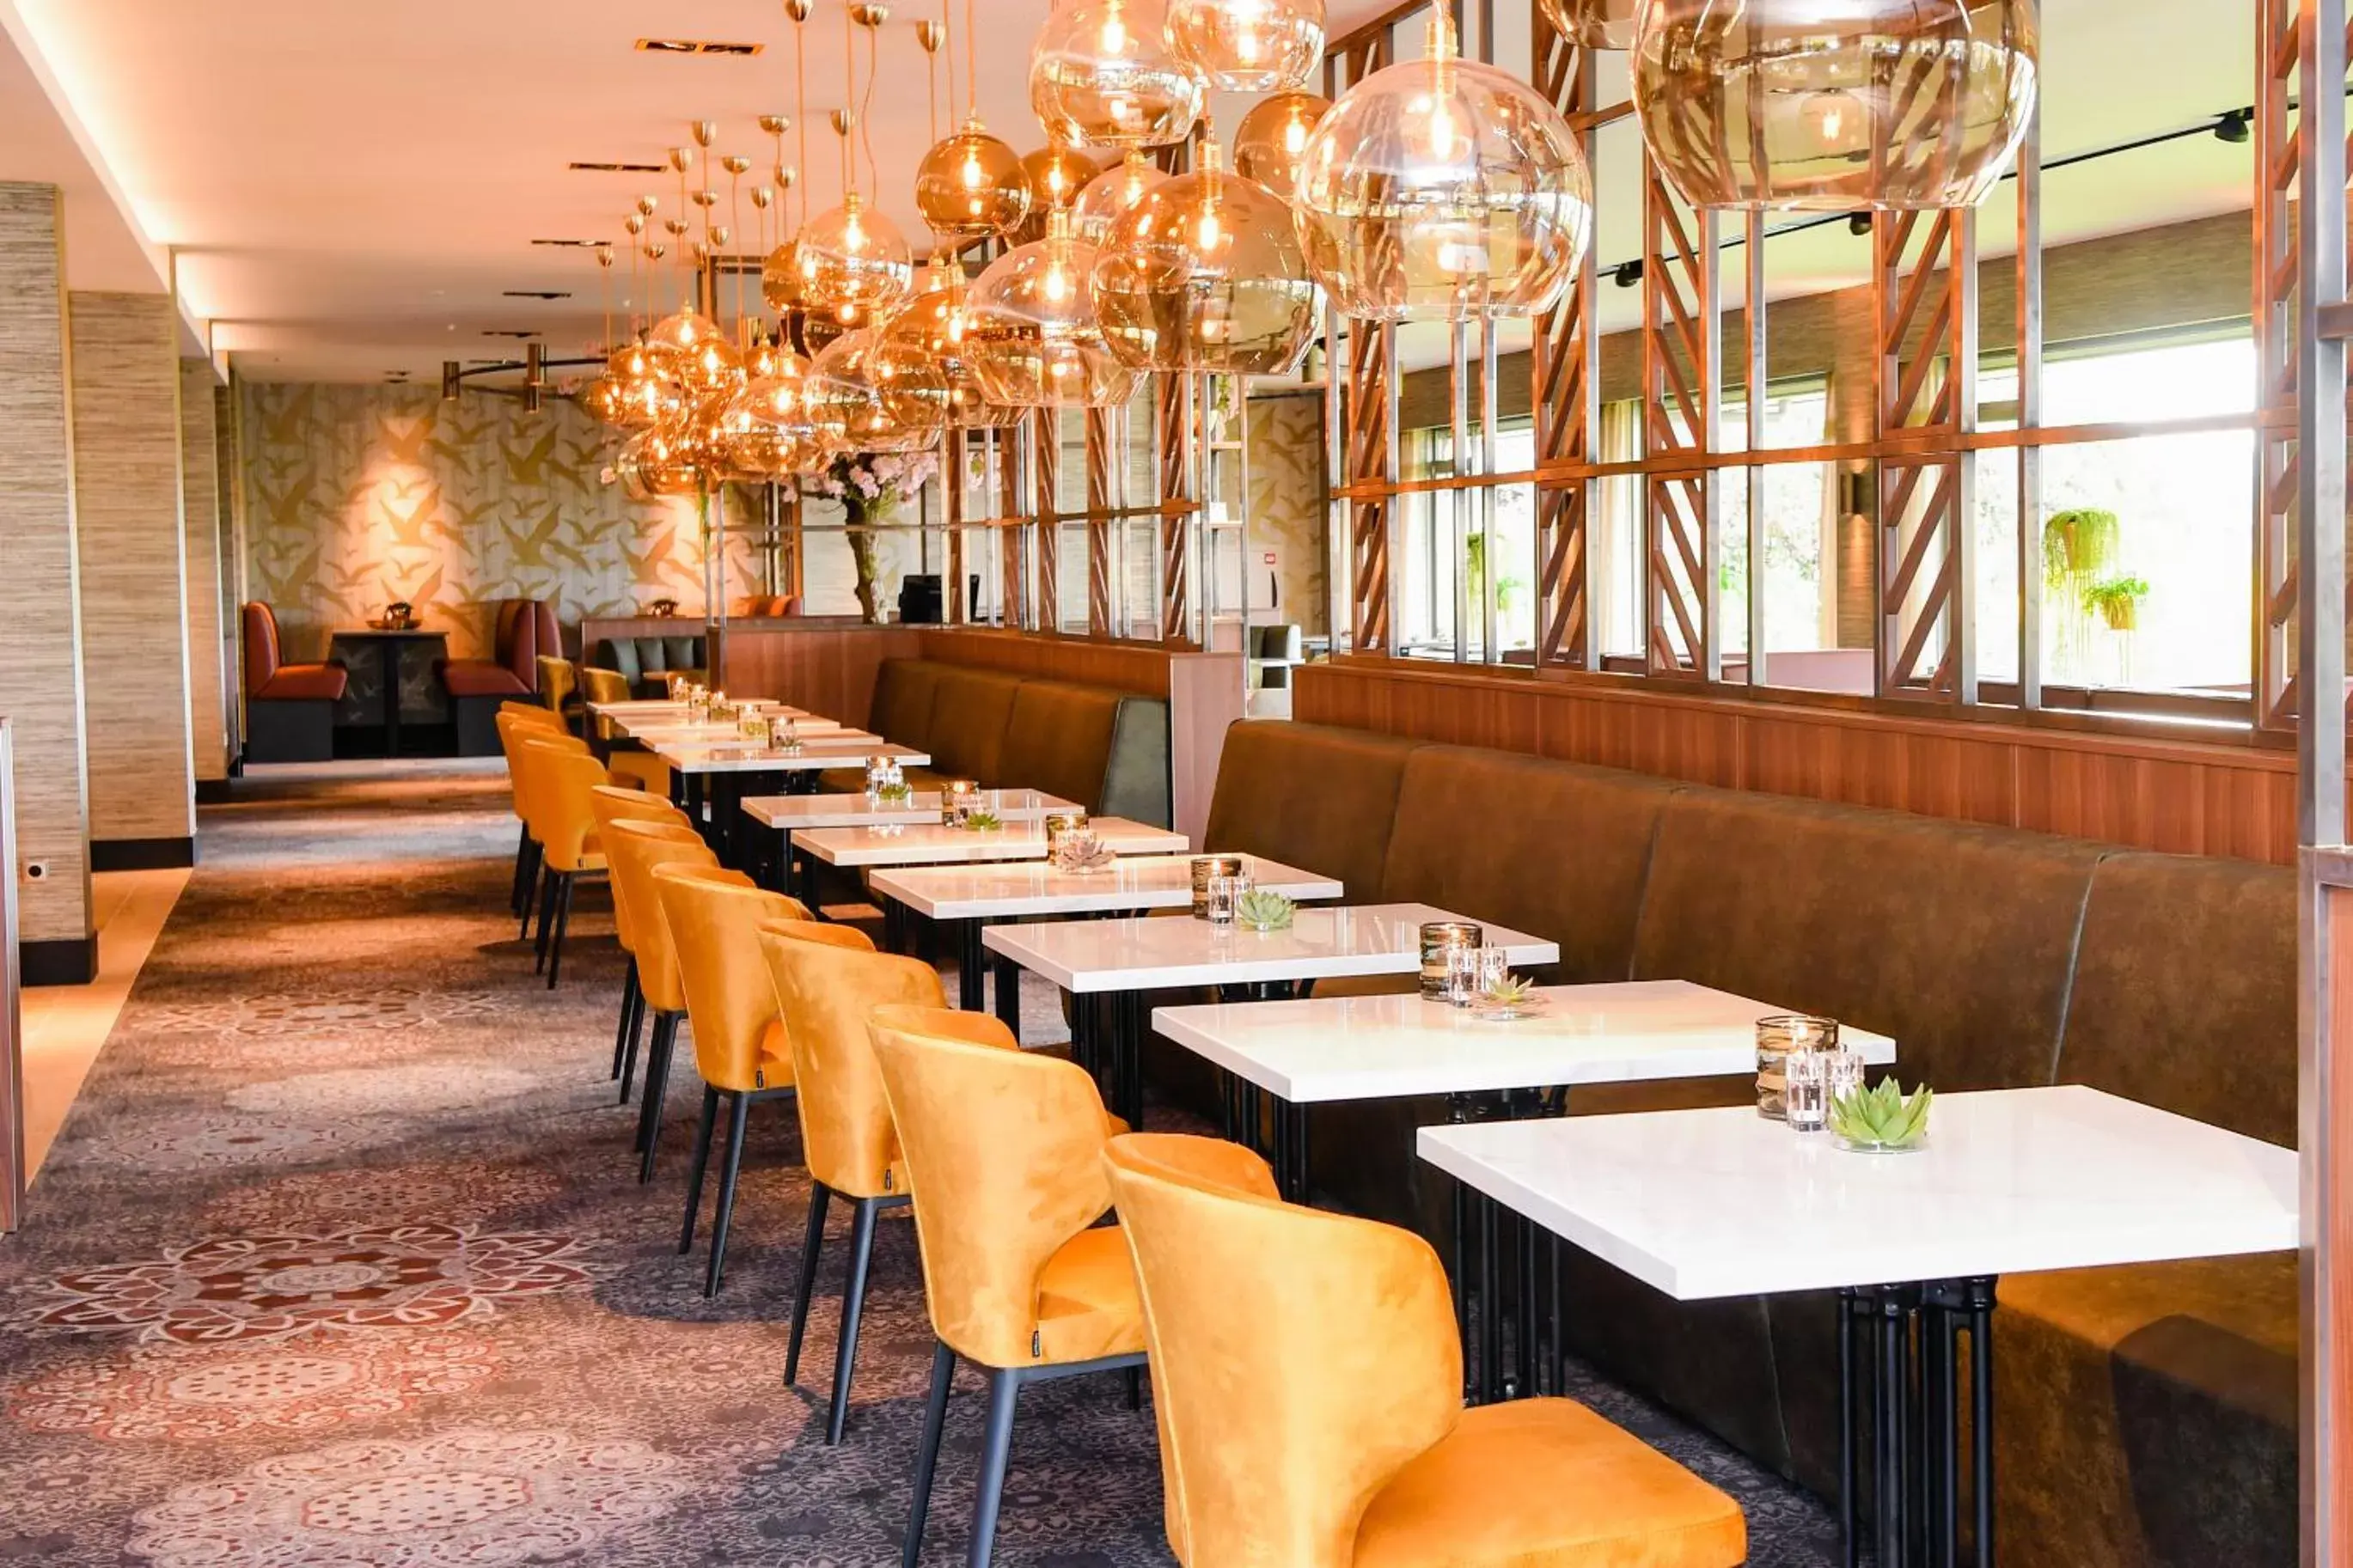 Restaurant/places to eat in Van der Valk Hotel Assen